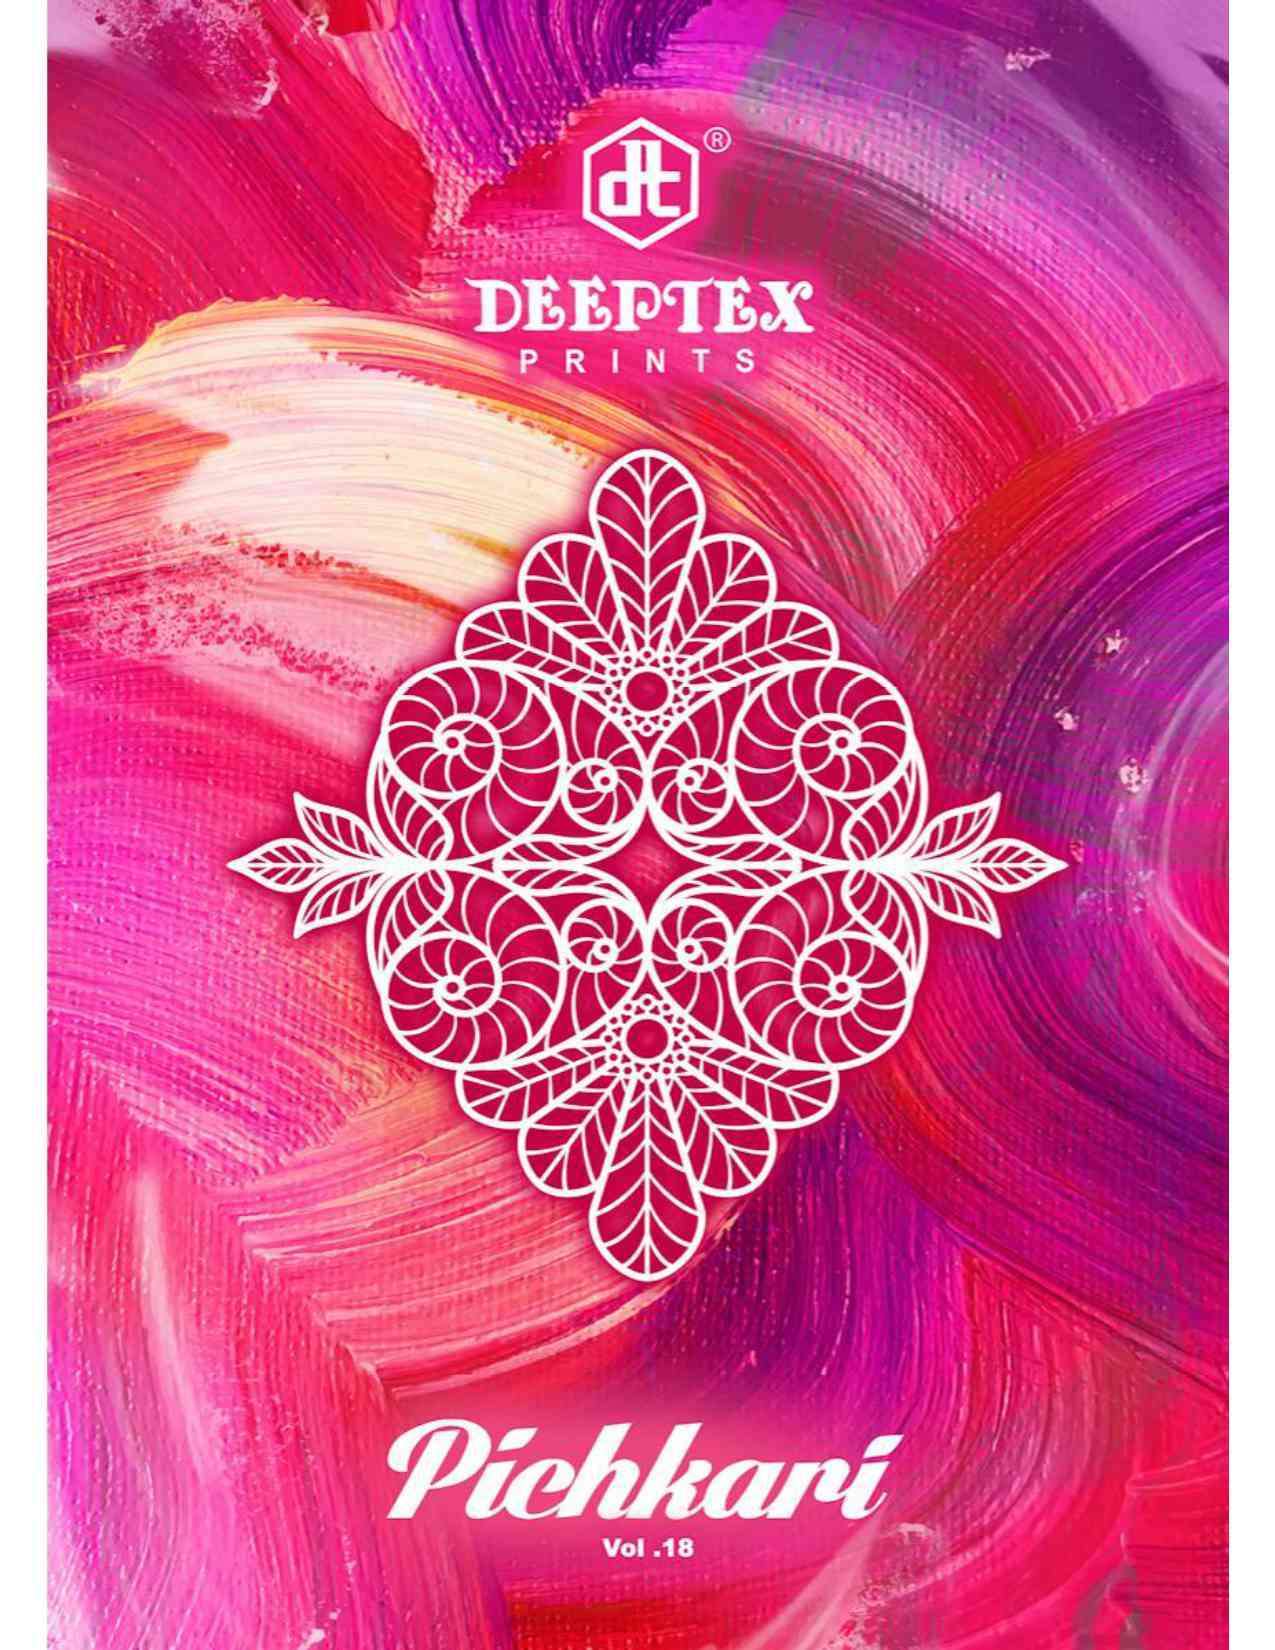 Deeptex Prints Pichkari Vol 18 Printed Cotton Dress Material...